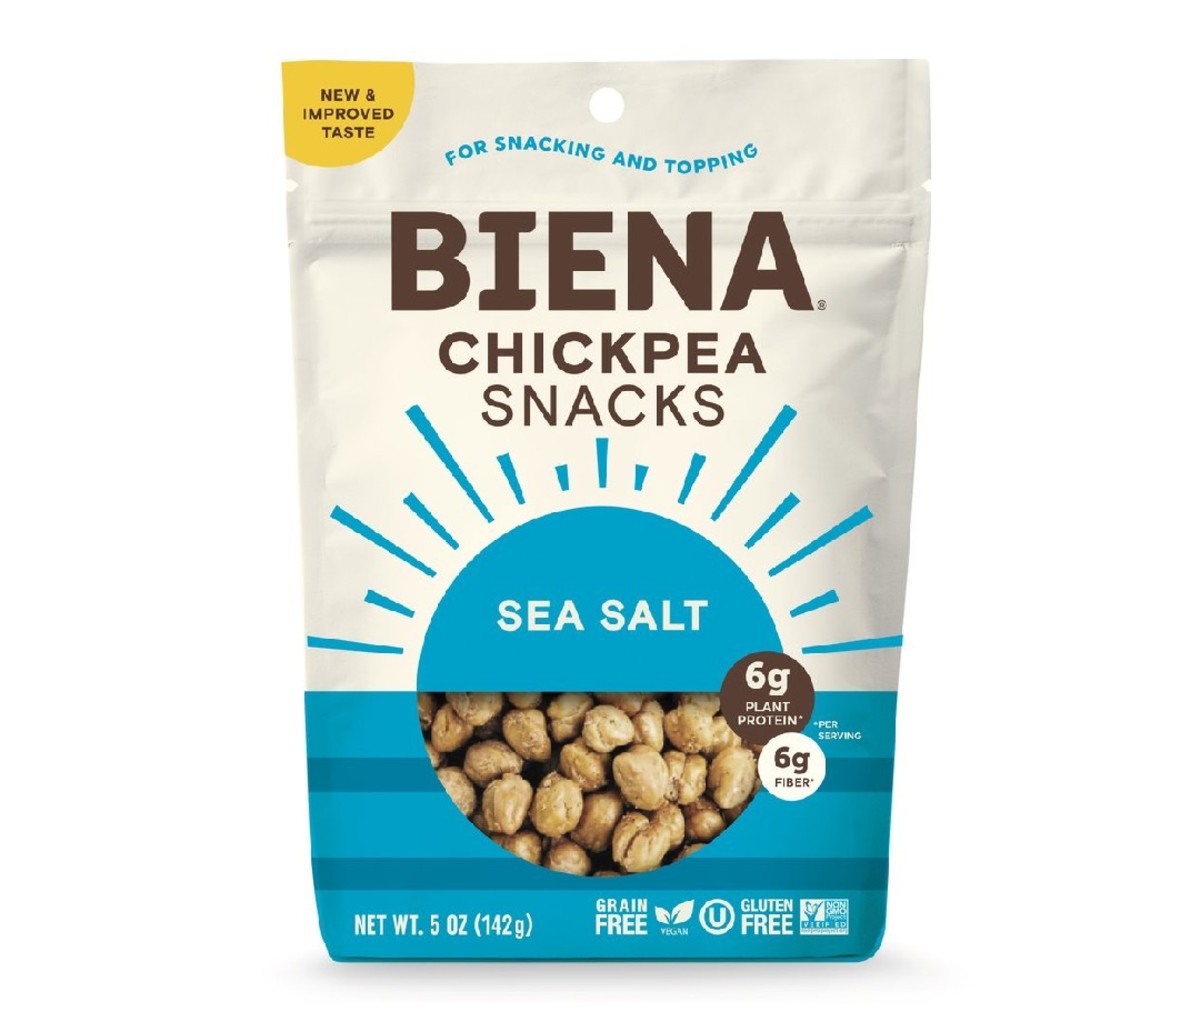 Biena Sea Salt Chickpea Snacks